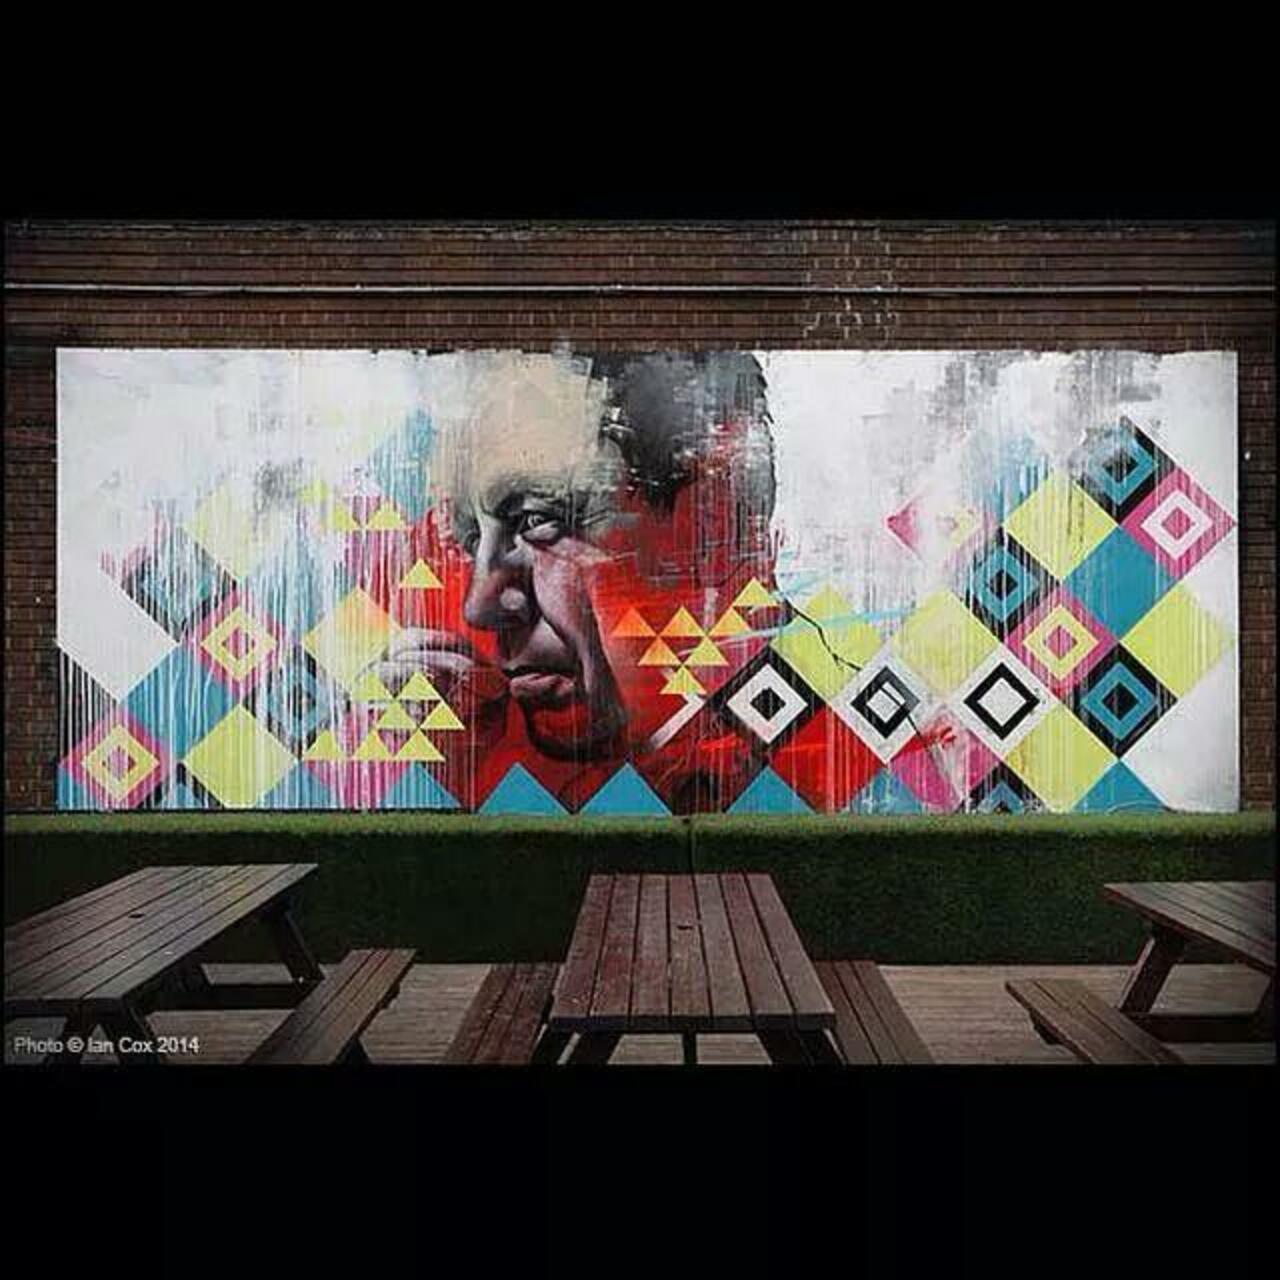 By Ben Slow & Carl Cashman #graffiti #urbanart #streetart #spraypaint #stencil #art #mural http://t.co/LAJDpgz5VJ